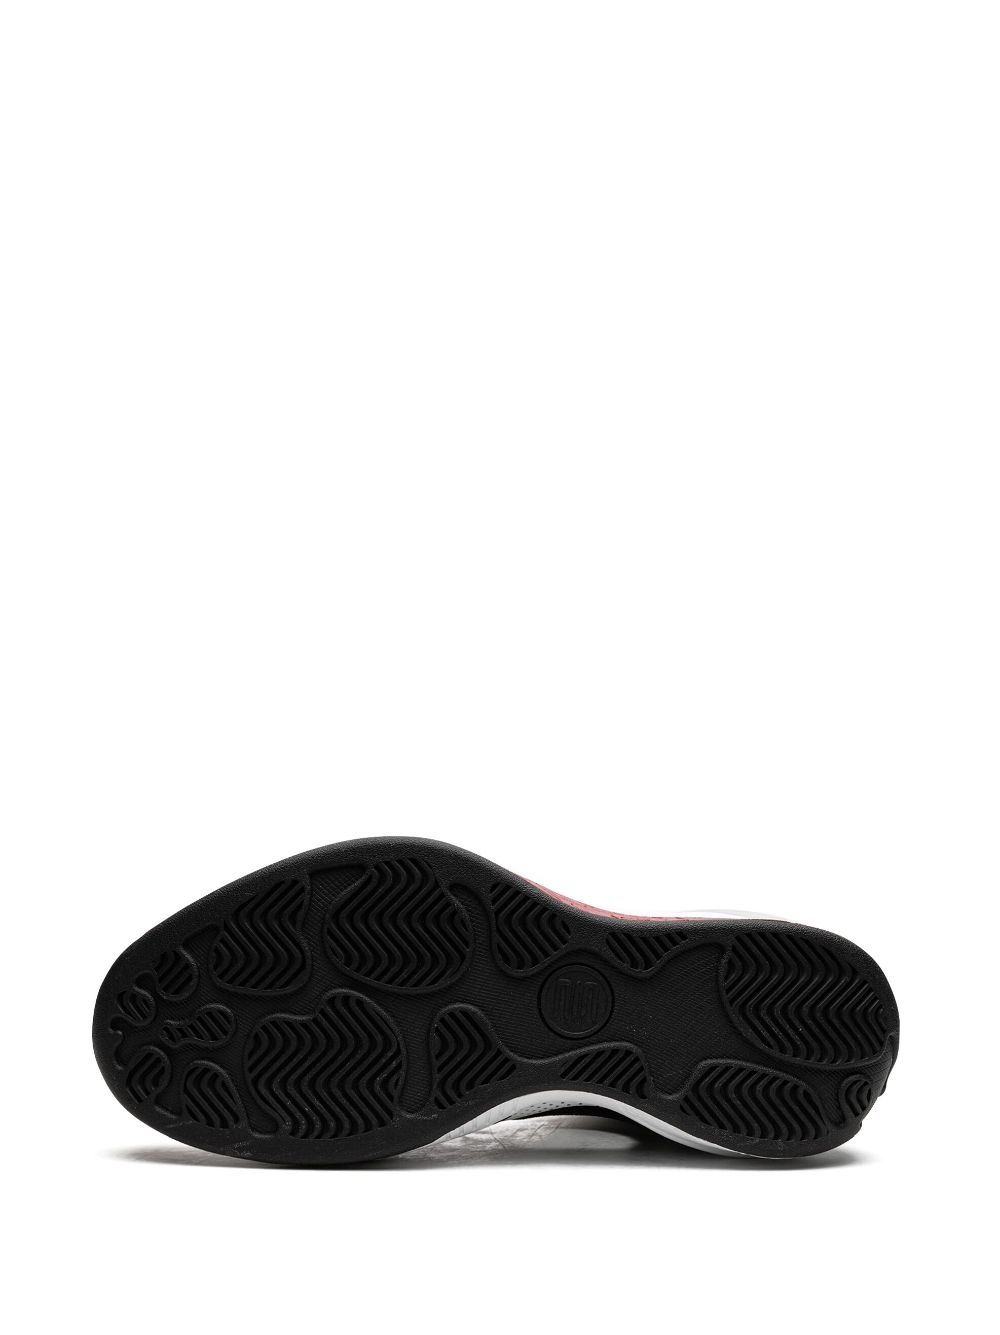 Air Jordan 2010 sneakers - 4